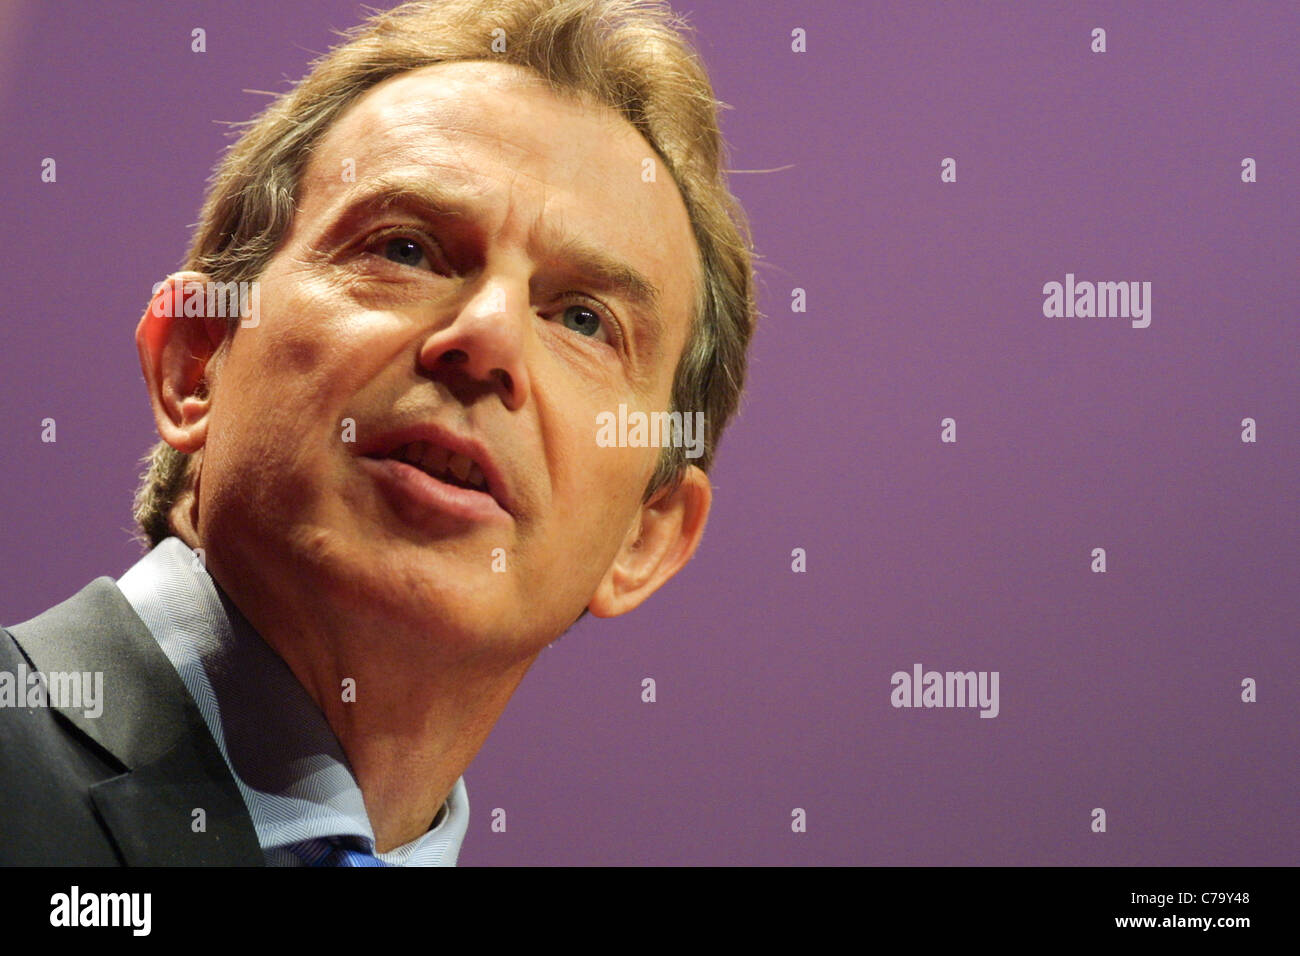 Premierminister Tony Blair spricht bei der Labour-Partei-Konferenz am 15. Februar 2003 in Glasgow, Schottland, statt. Stockfoto